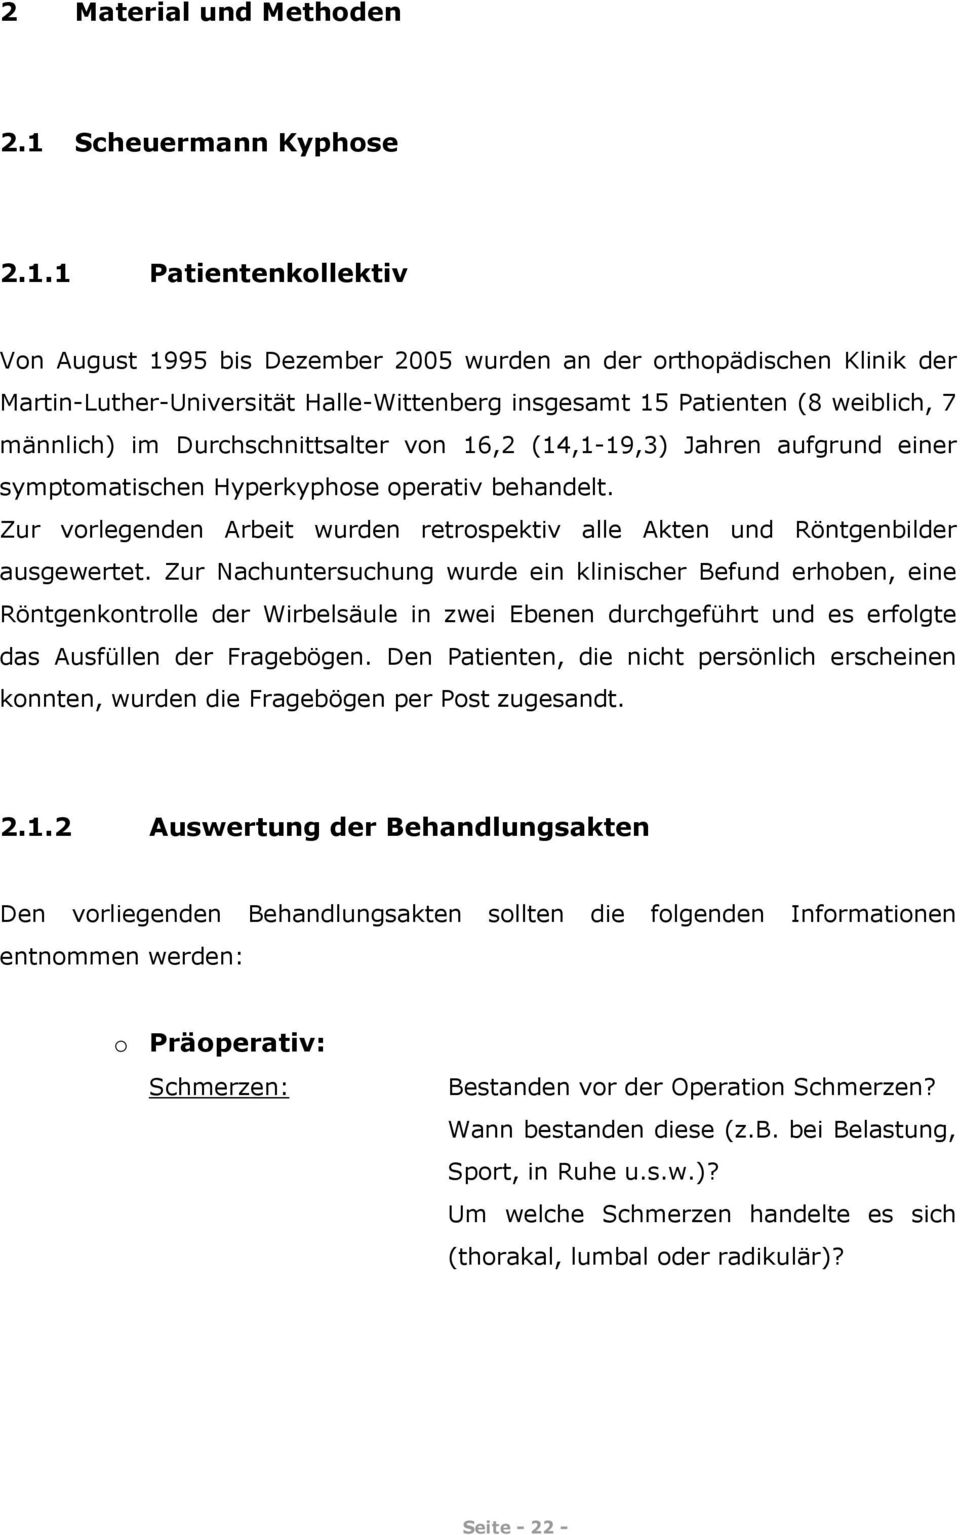 1 Patientenkollektiv Von August 1995 bis Dezember 2005 wurden an der orthopädischen Klinik der Martin-Luther-Universität Halle-Wittenberg insgesamt 15 Patienten (8 weiblich, 7 männlich) im